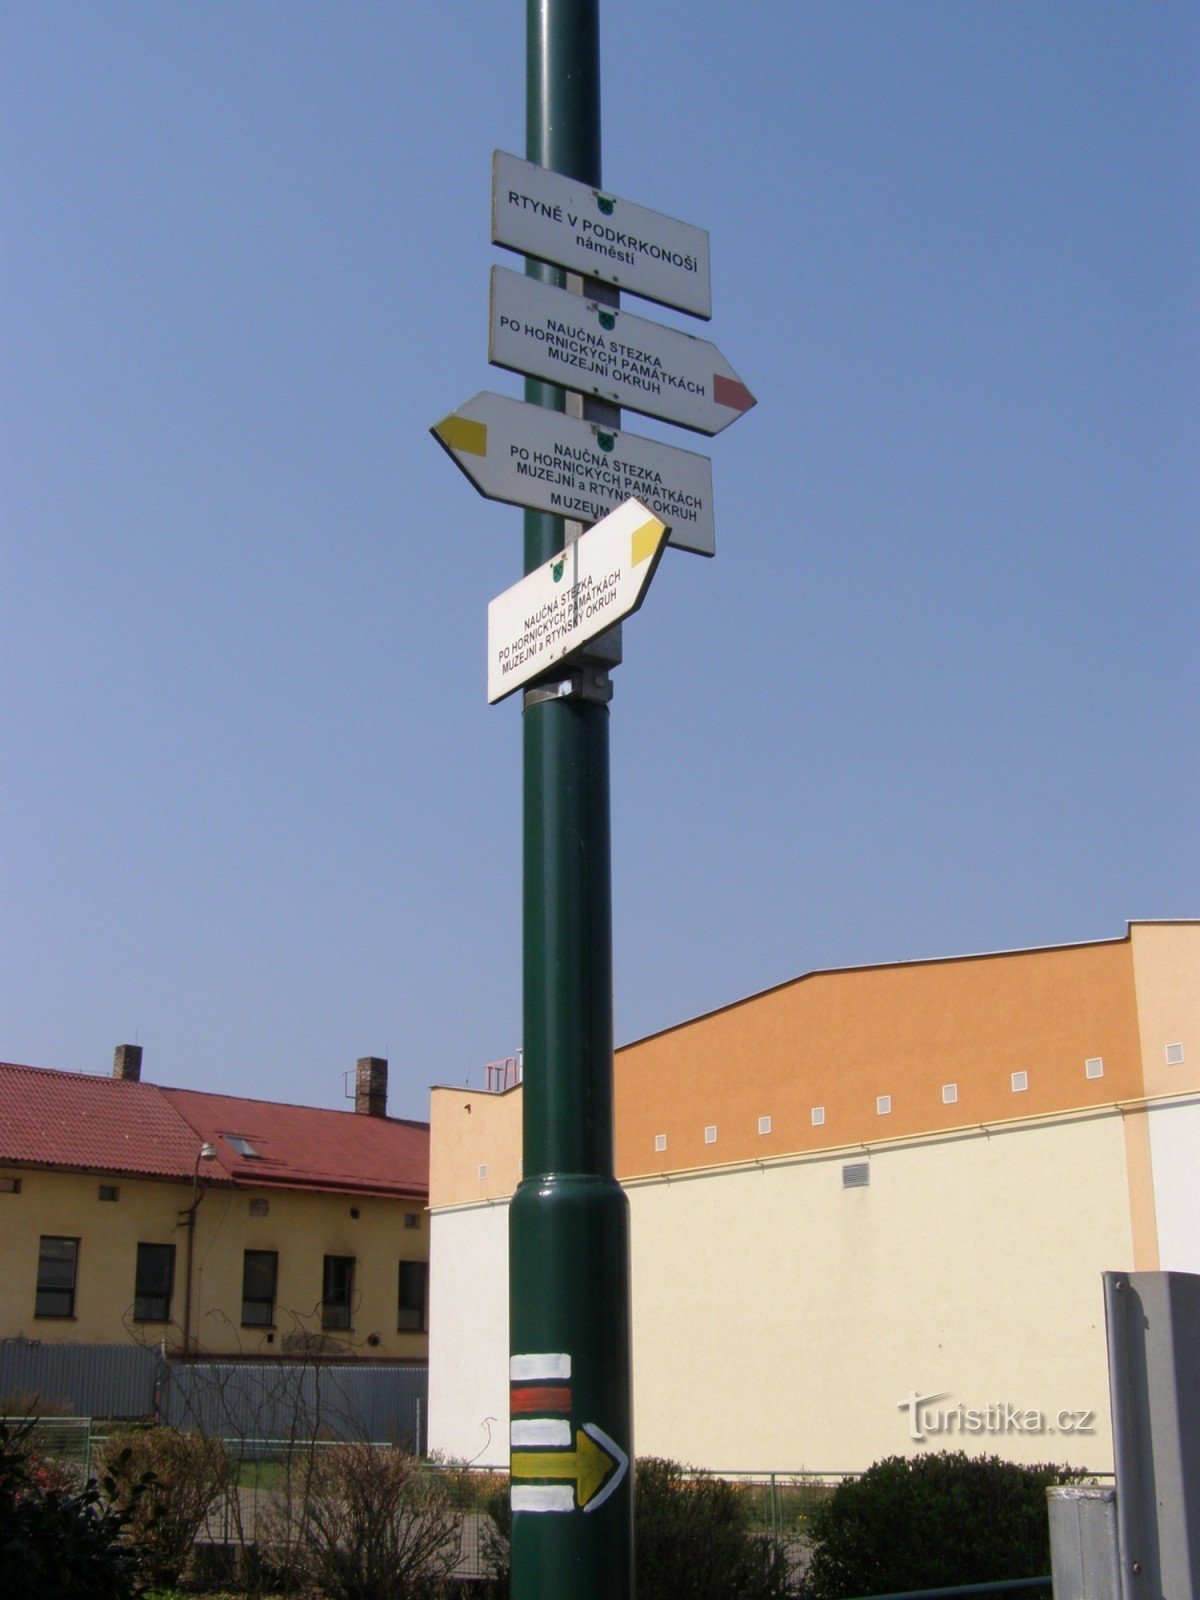 toeristisch kruispunt Rtyně in Podkrkonoší - náměstí Horníků